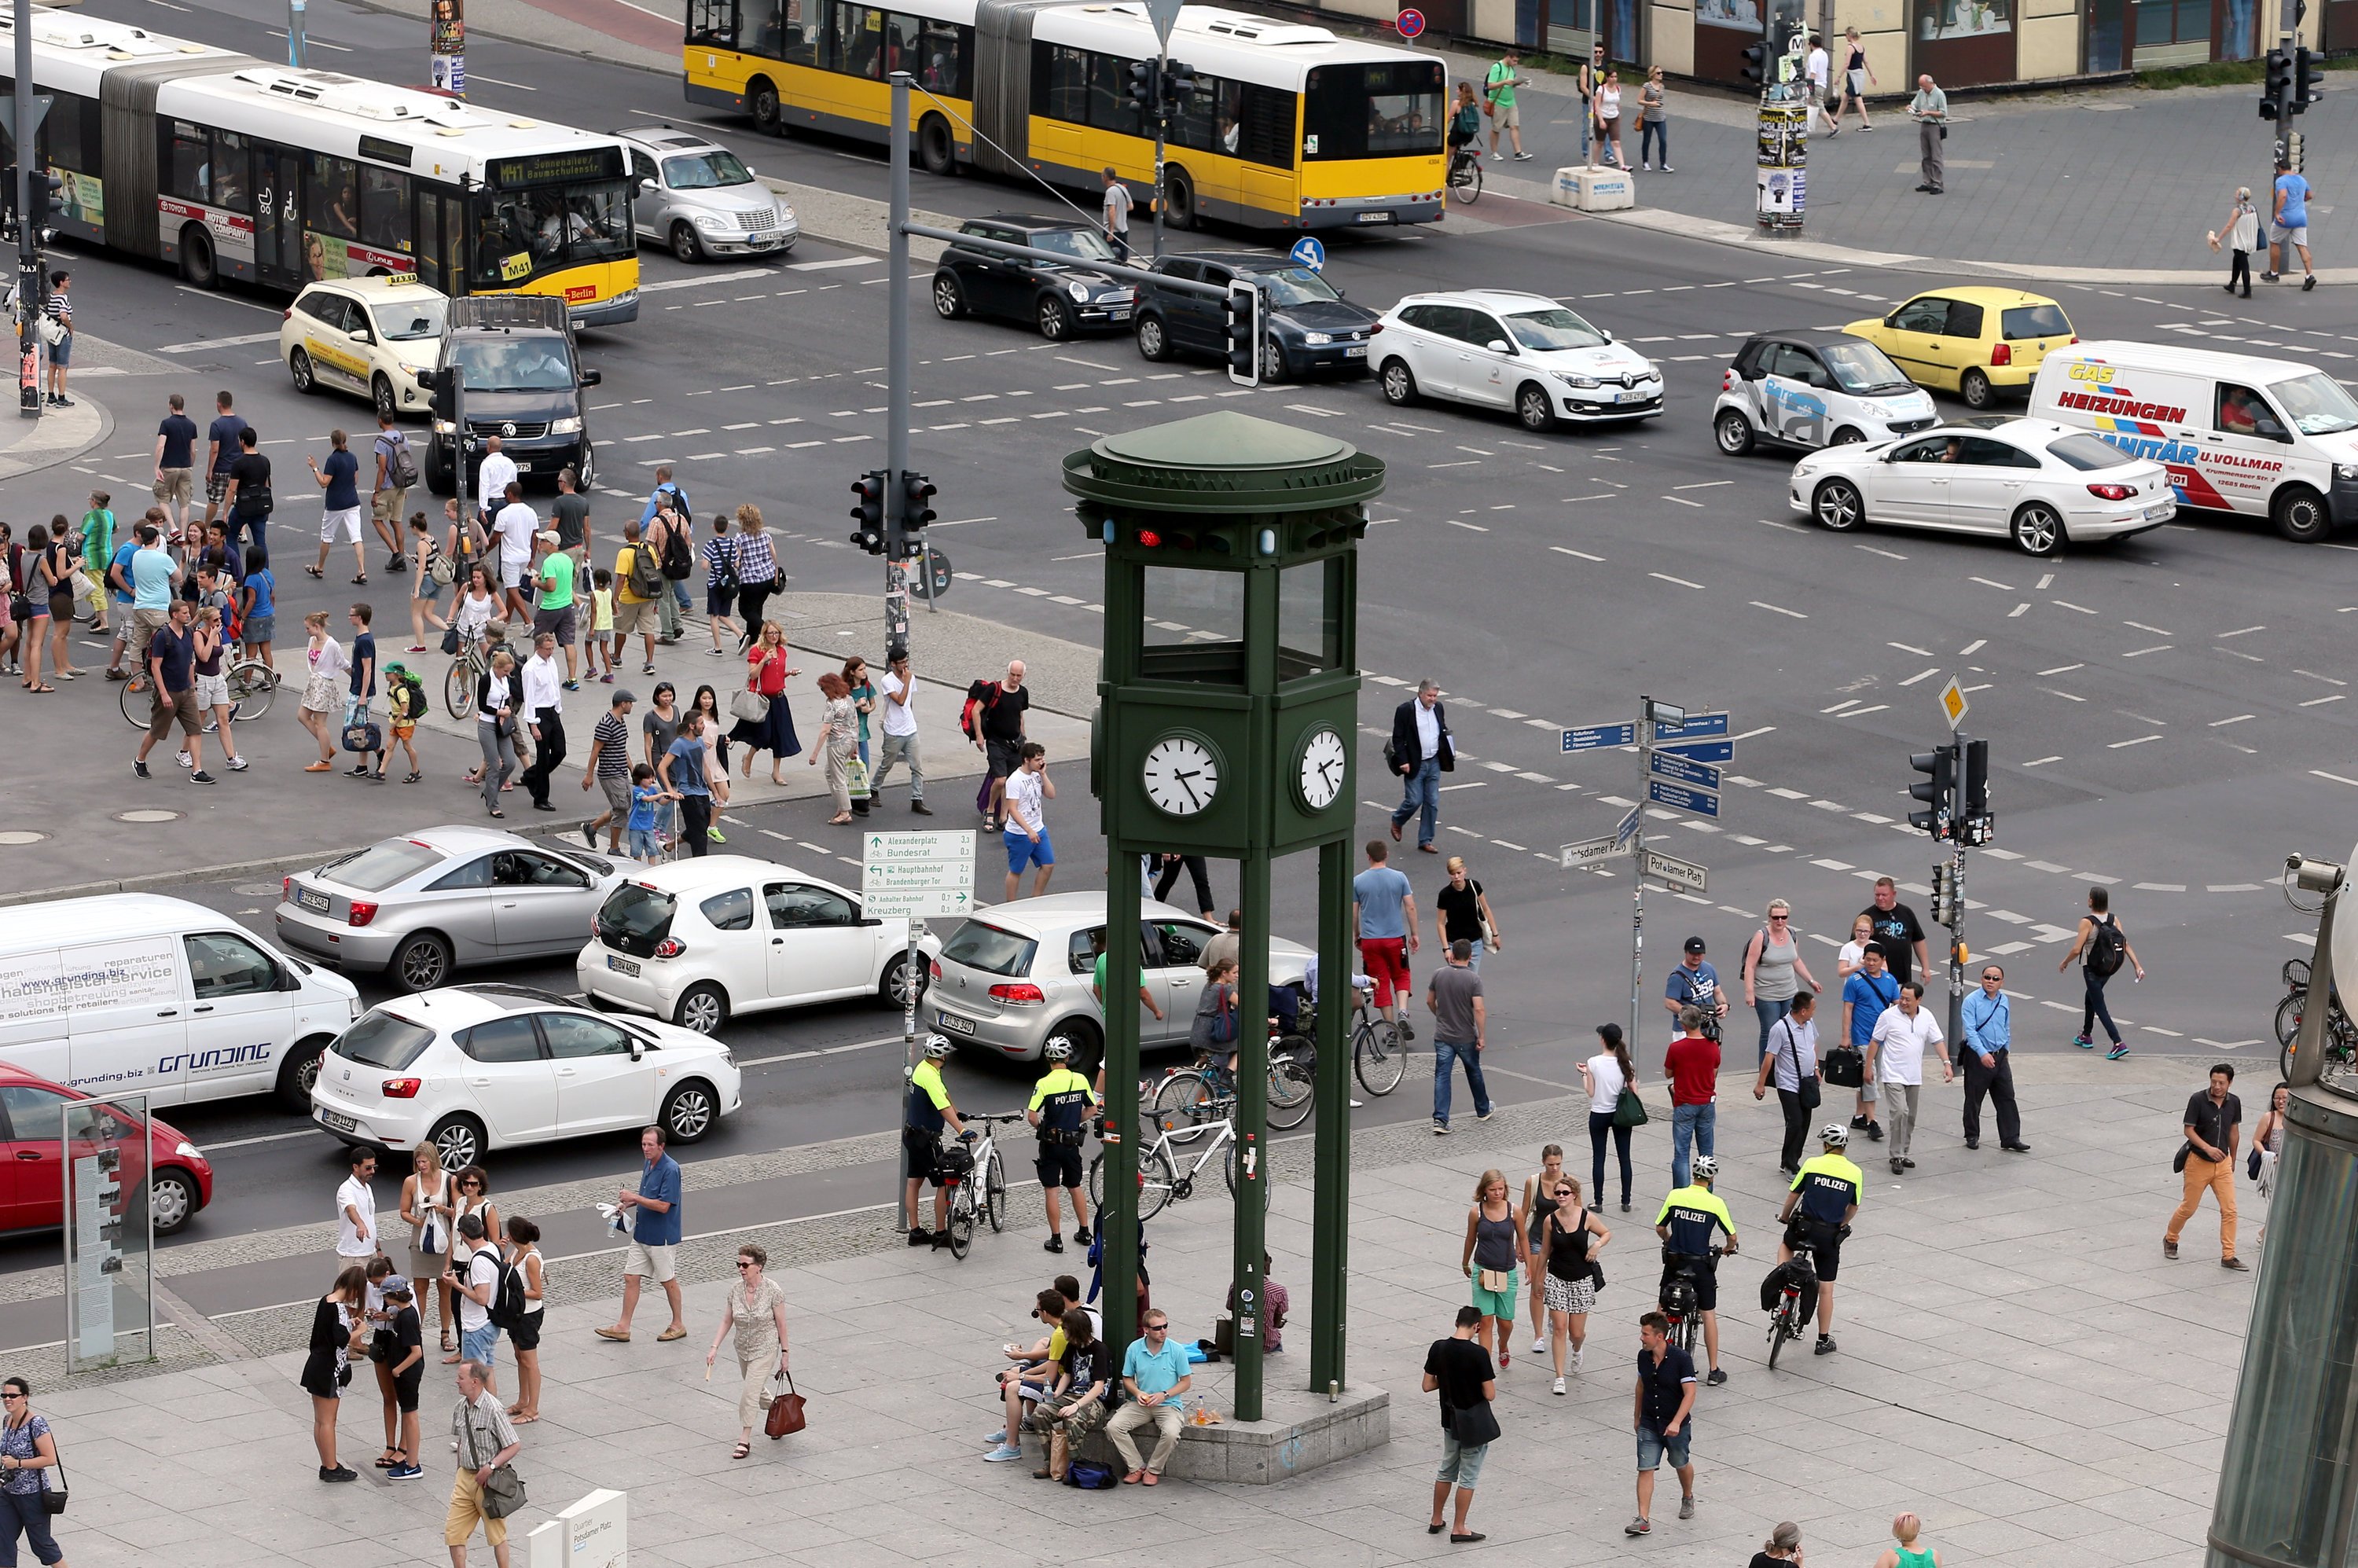 Der 1924 auf dem Potsdamer Platz in Berlin errichtete fünfeckige Verkehrsturm war die erste Ampel in Europa. Er ist zu einem Wahrzeichen der Metropole geworden. Früher regelte ein Polizist im Turm die Lichtsignale per Hand. 